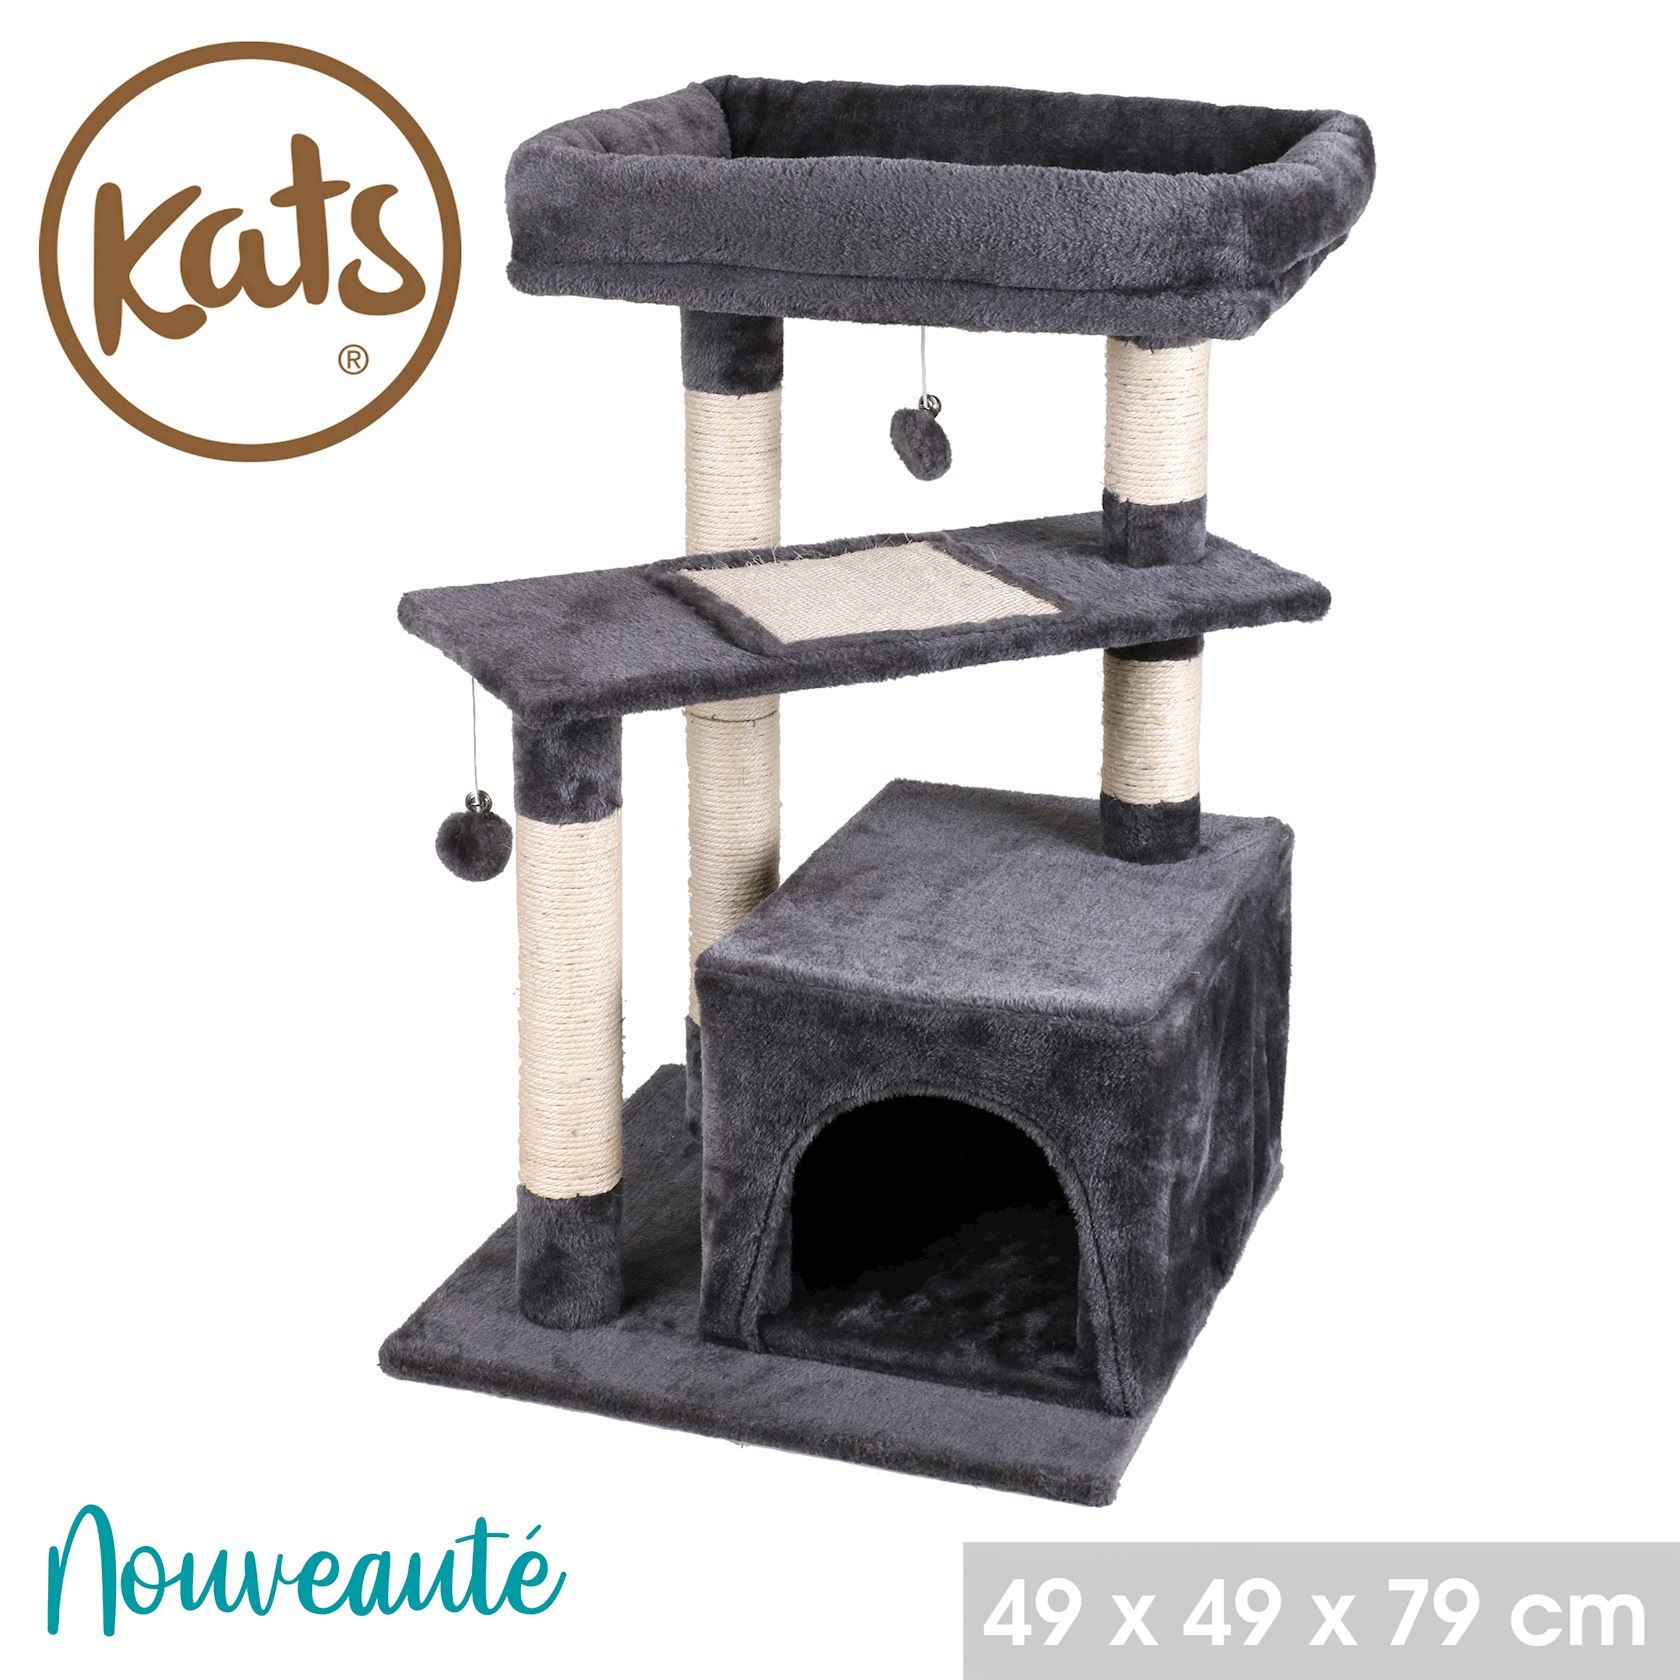 Kats-kattenboom-met-schuilplaats-krabmeubel-en-kussen-49x49xh79cm